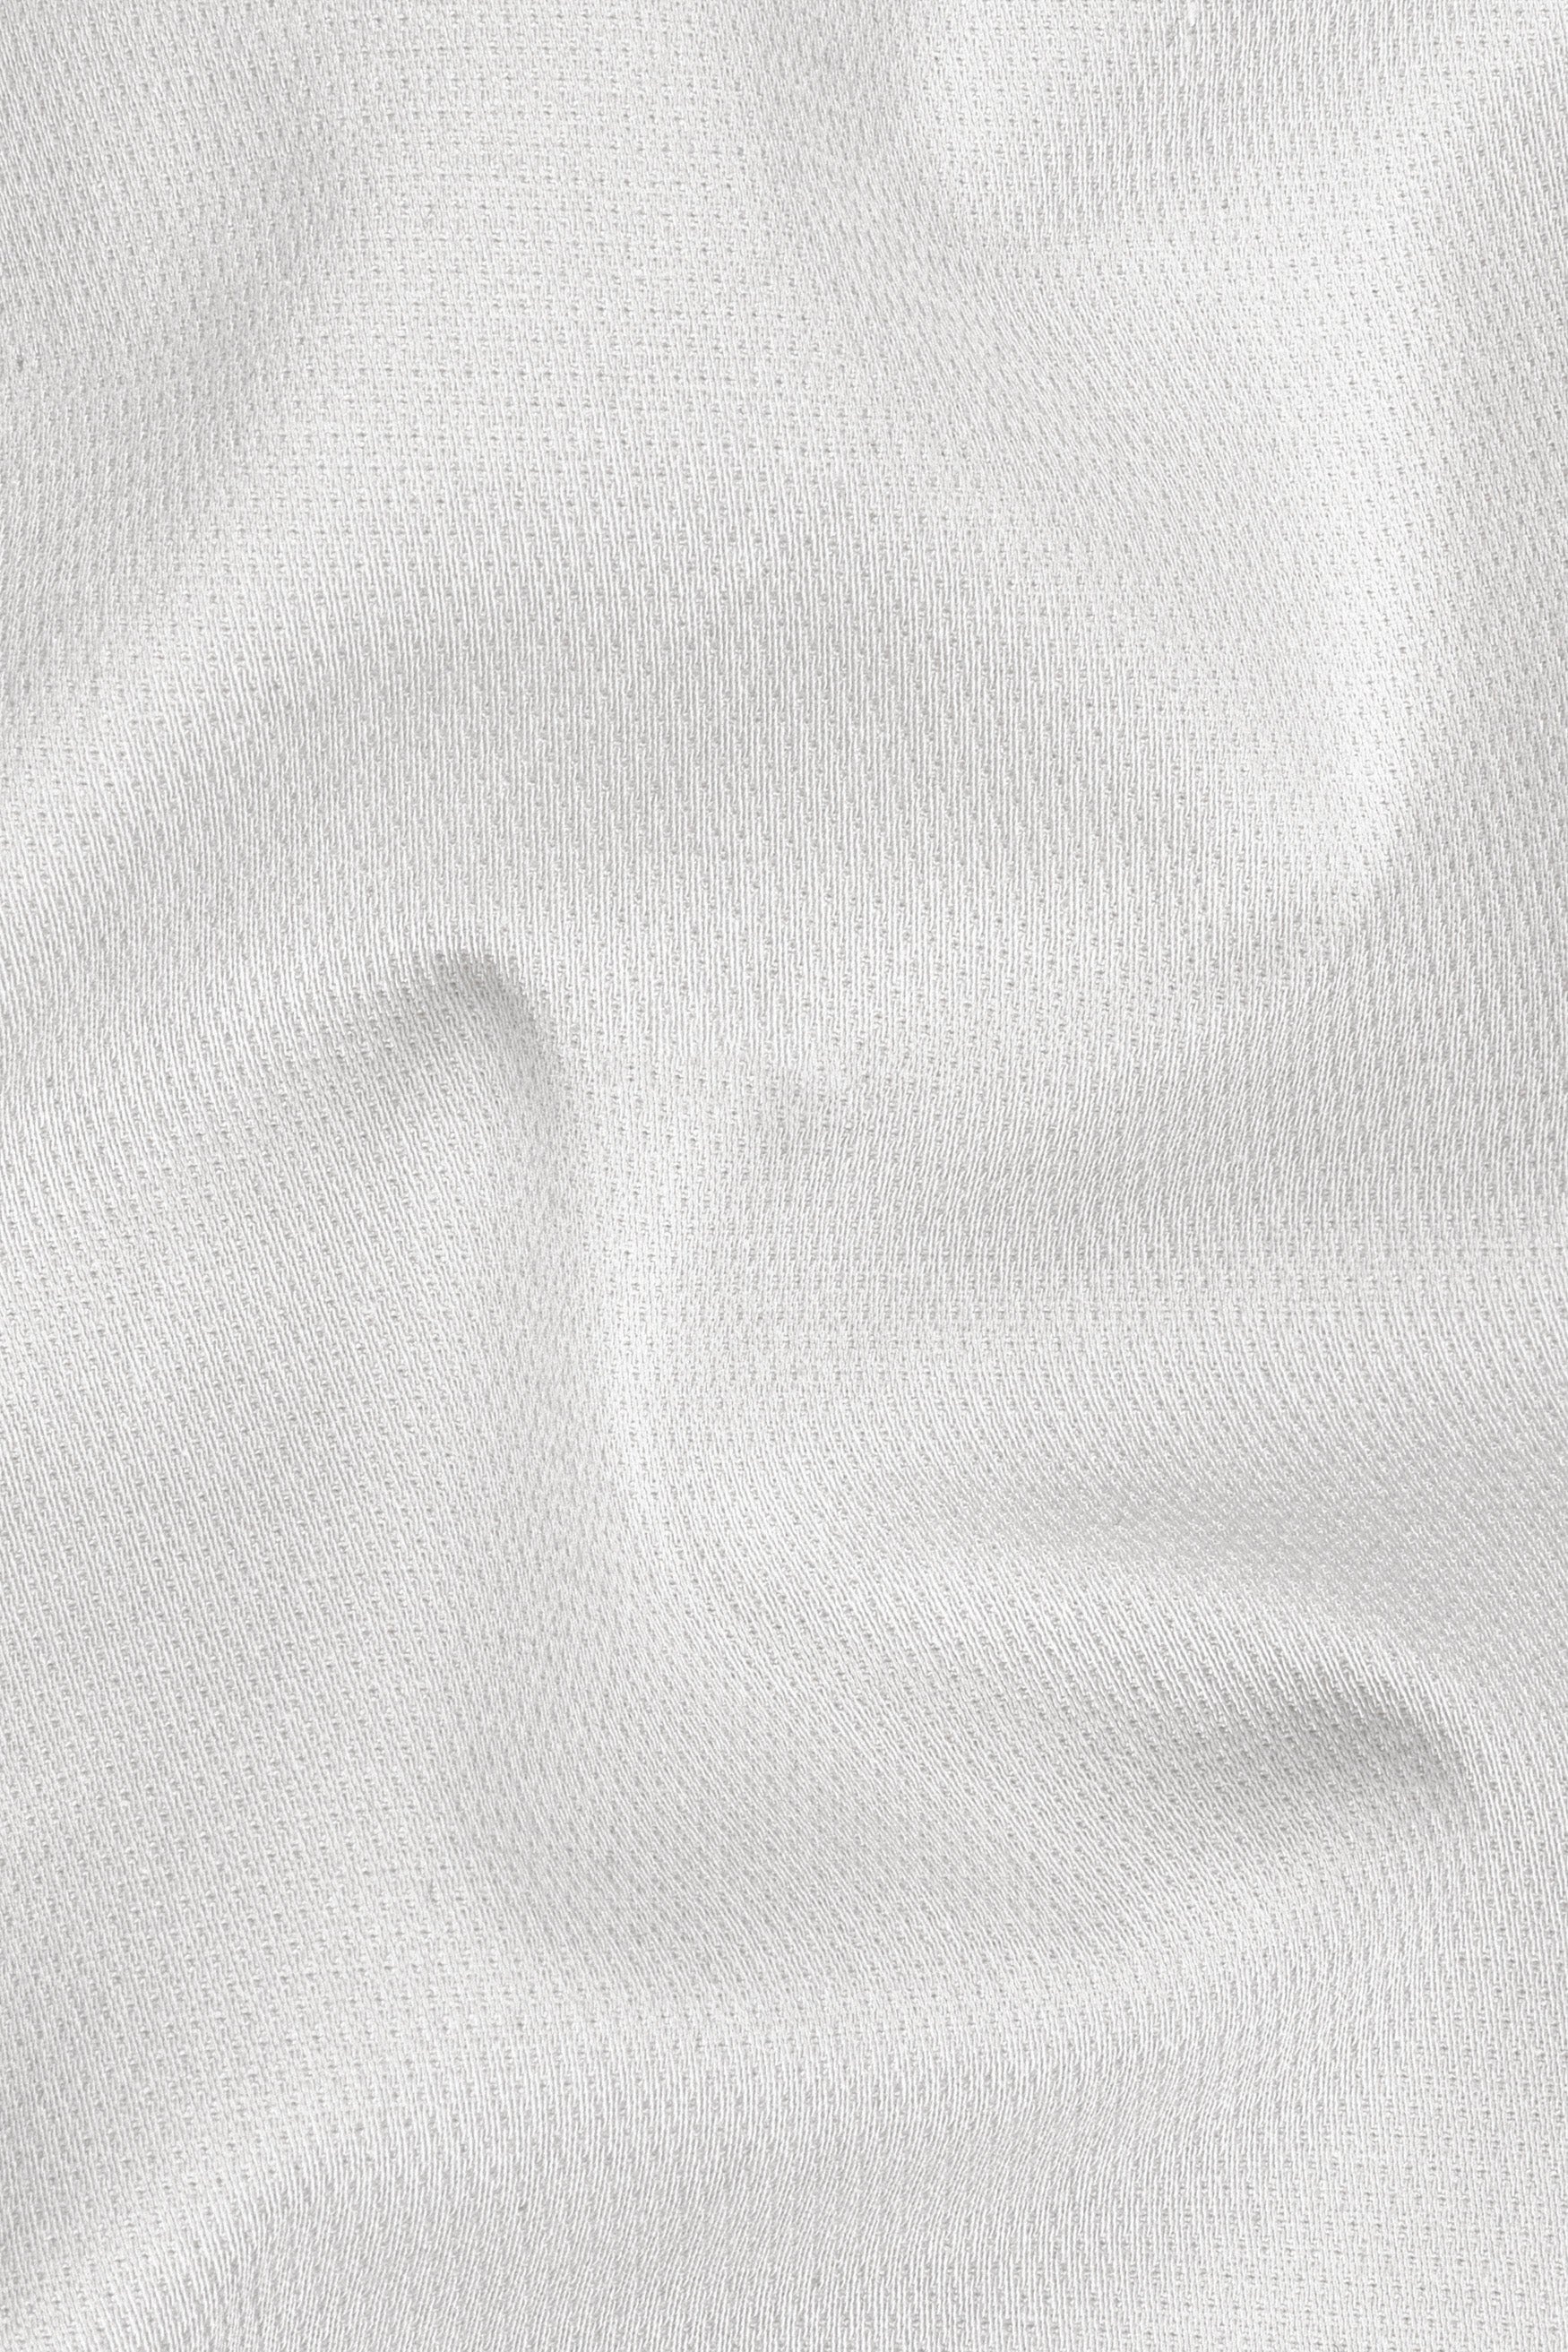 Mercury Cream Premium Cotton Chinos Pant